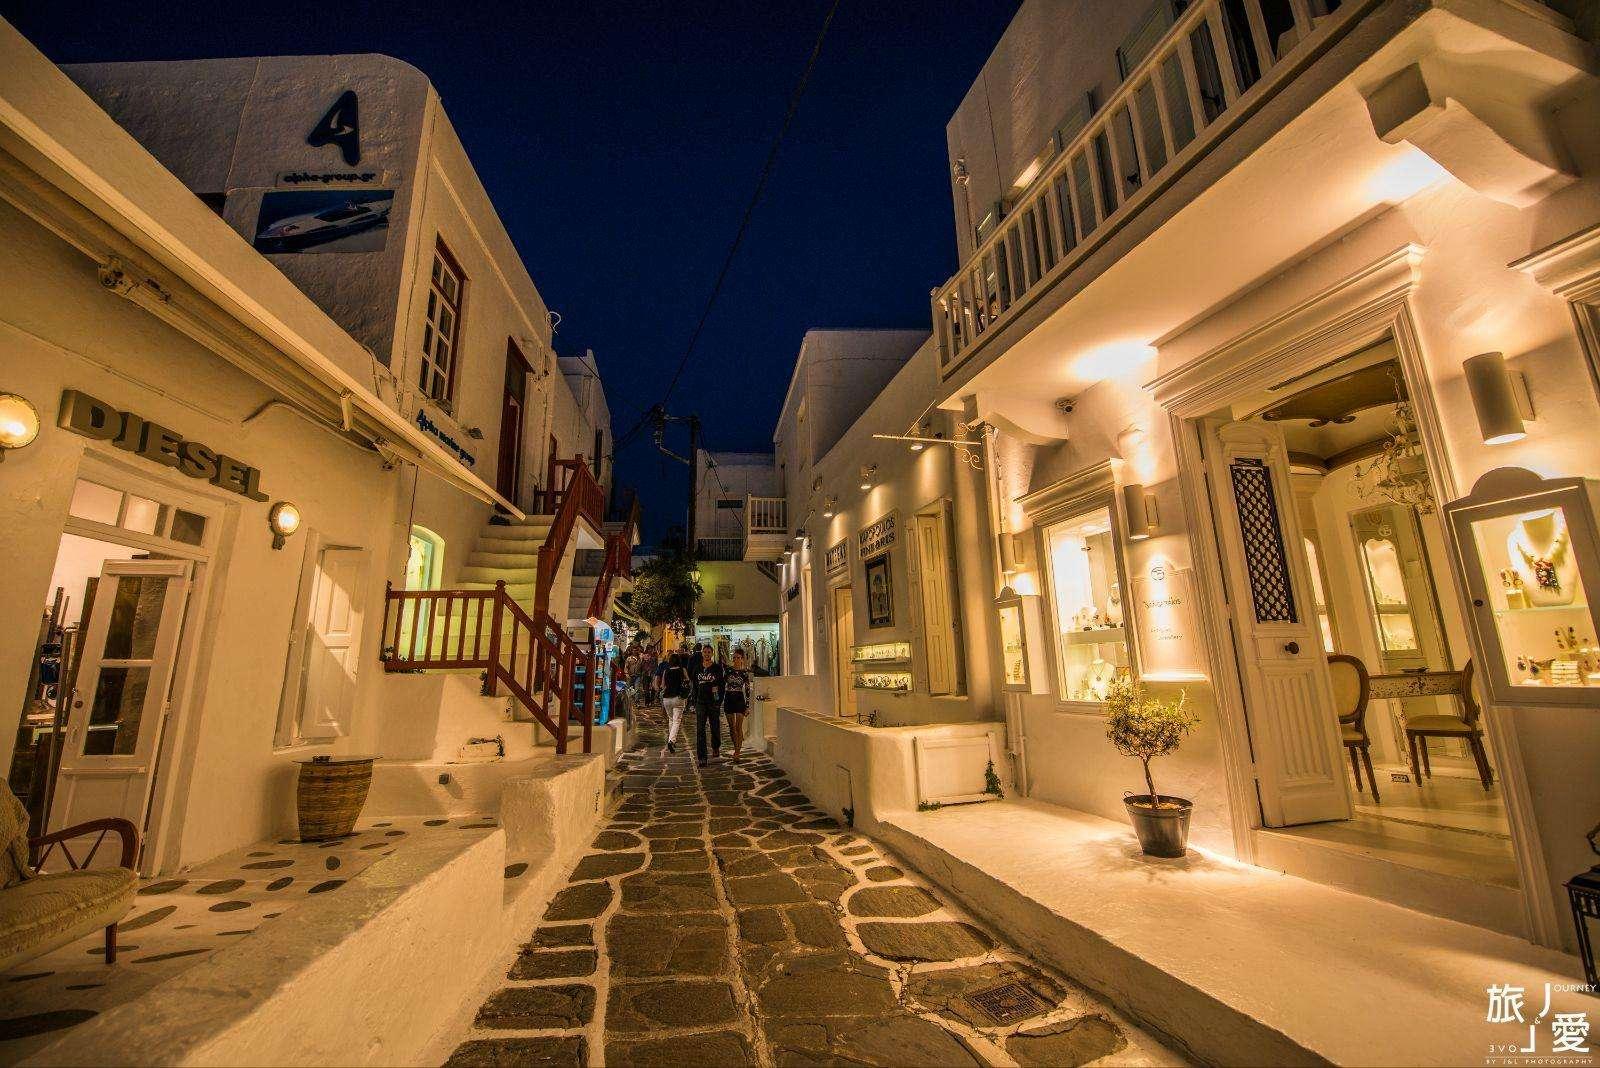 【希臘Greece】普拉卡舊城區 慢步雅典色彩豐富活潑的古城鎮和衛城夜景 - 輕旅行